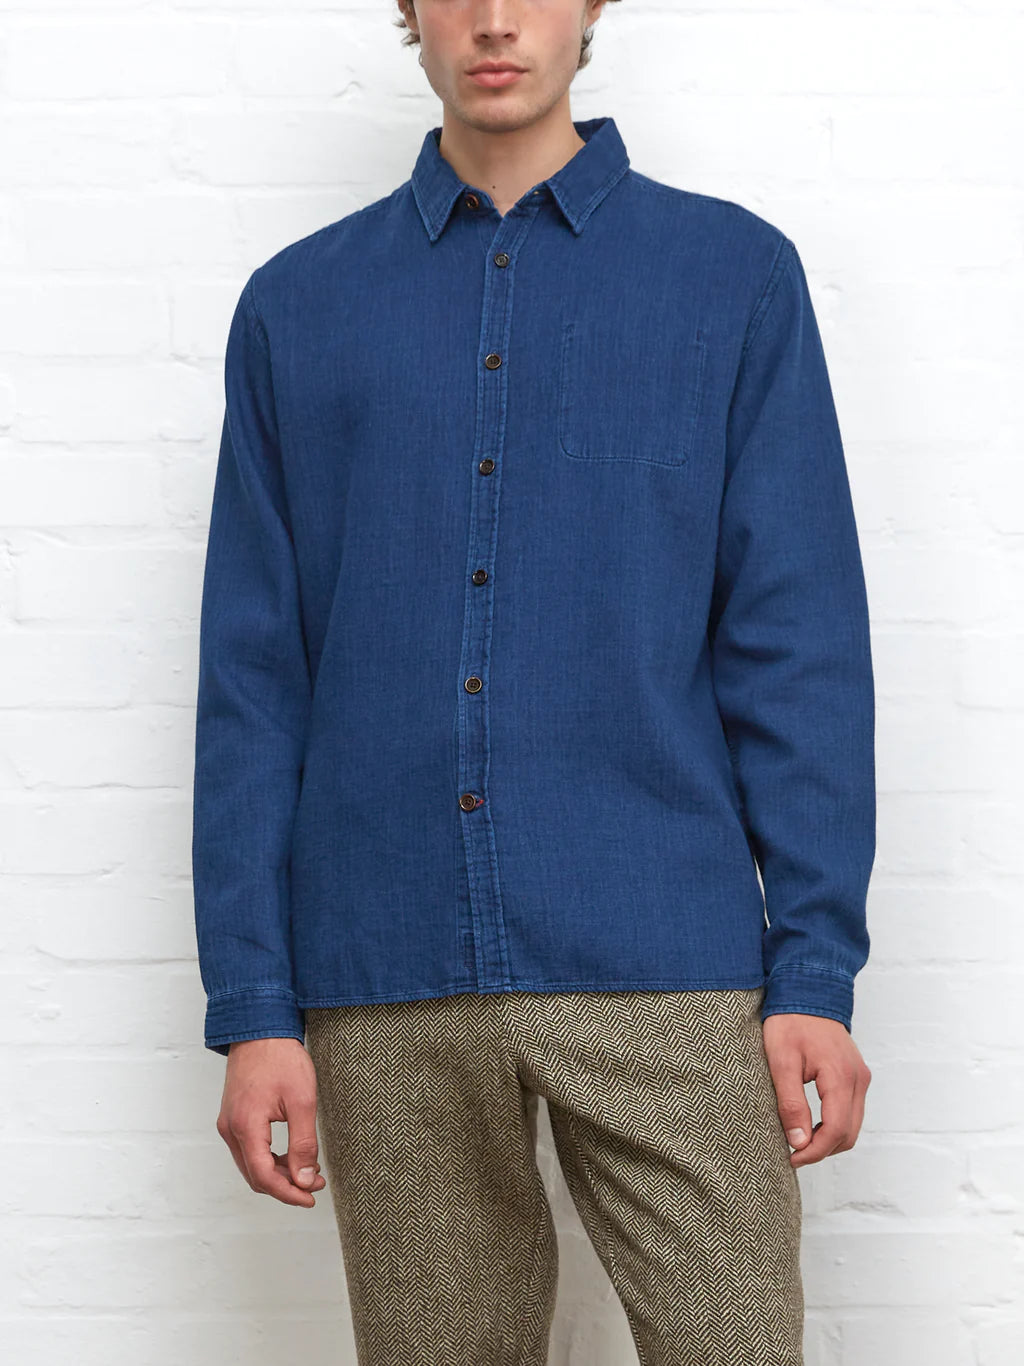 Oliver Spencer New York Special Shirt Levens indigo blue